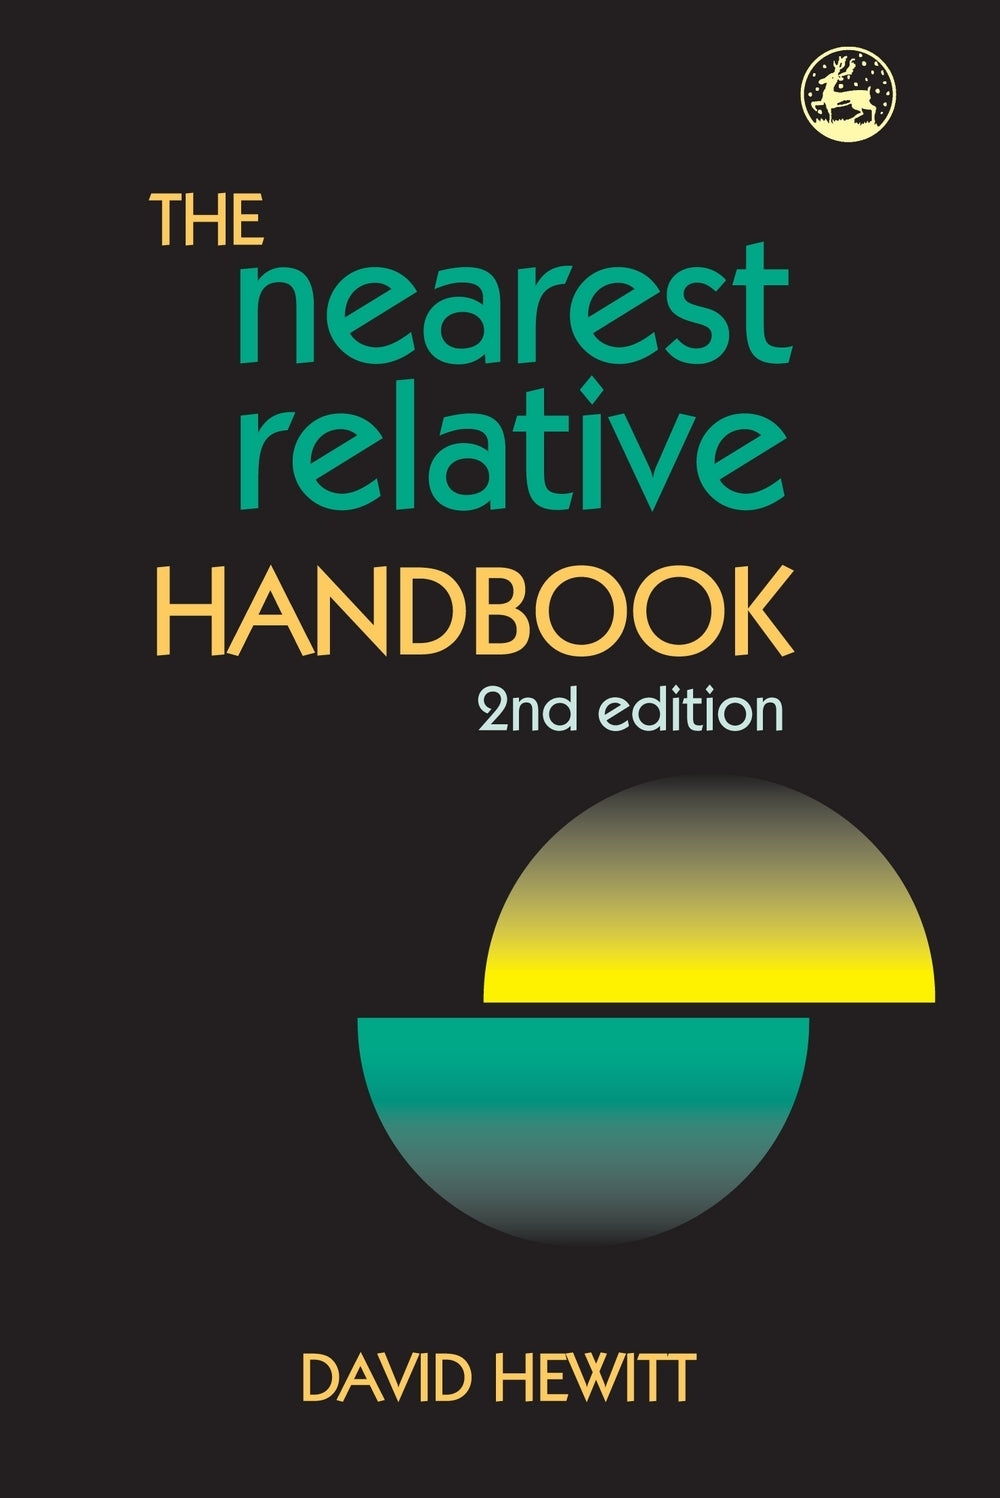 The Nearest Relative Handbook by David Hewitt